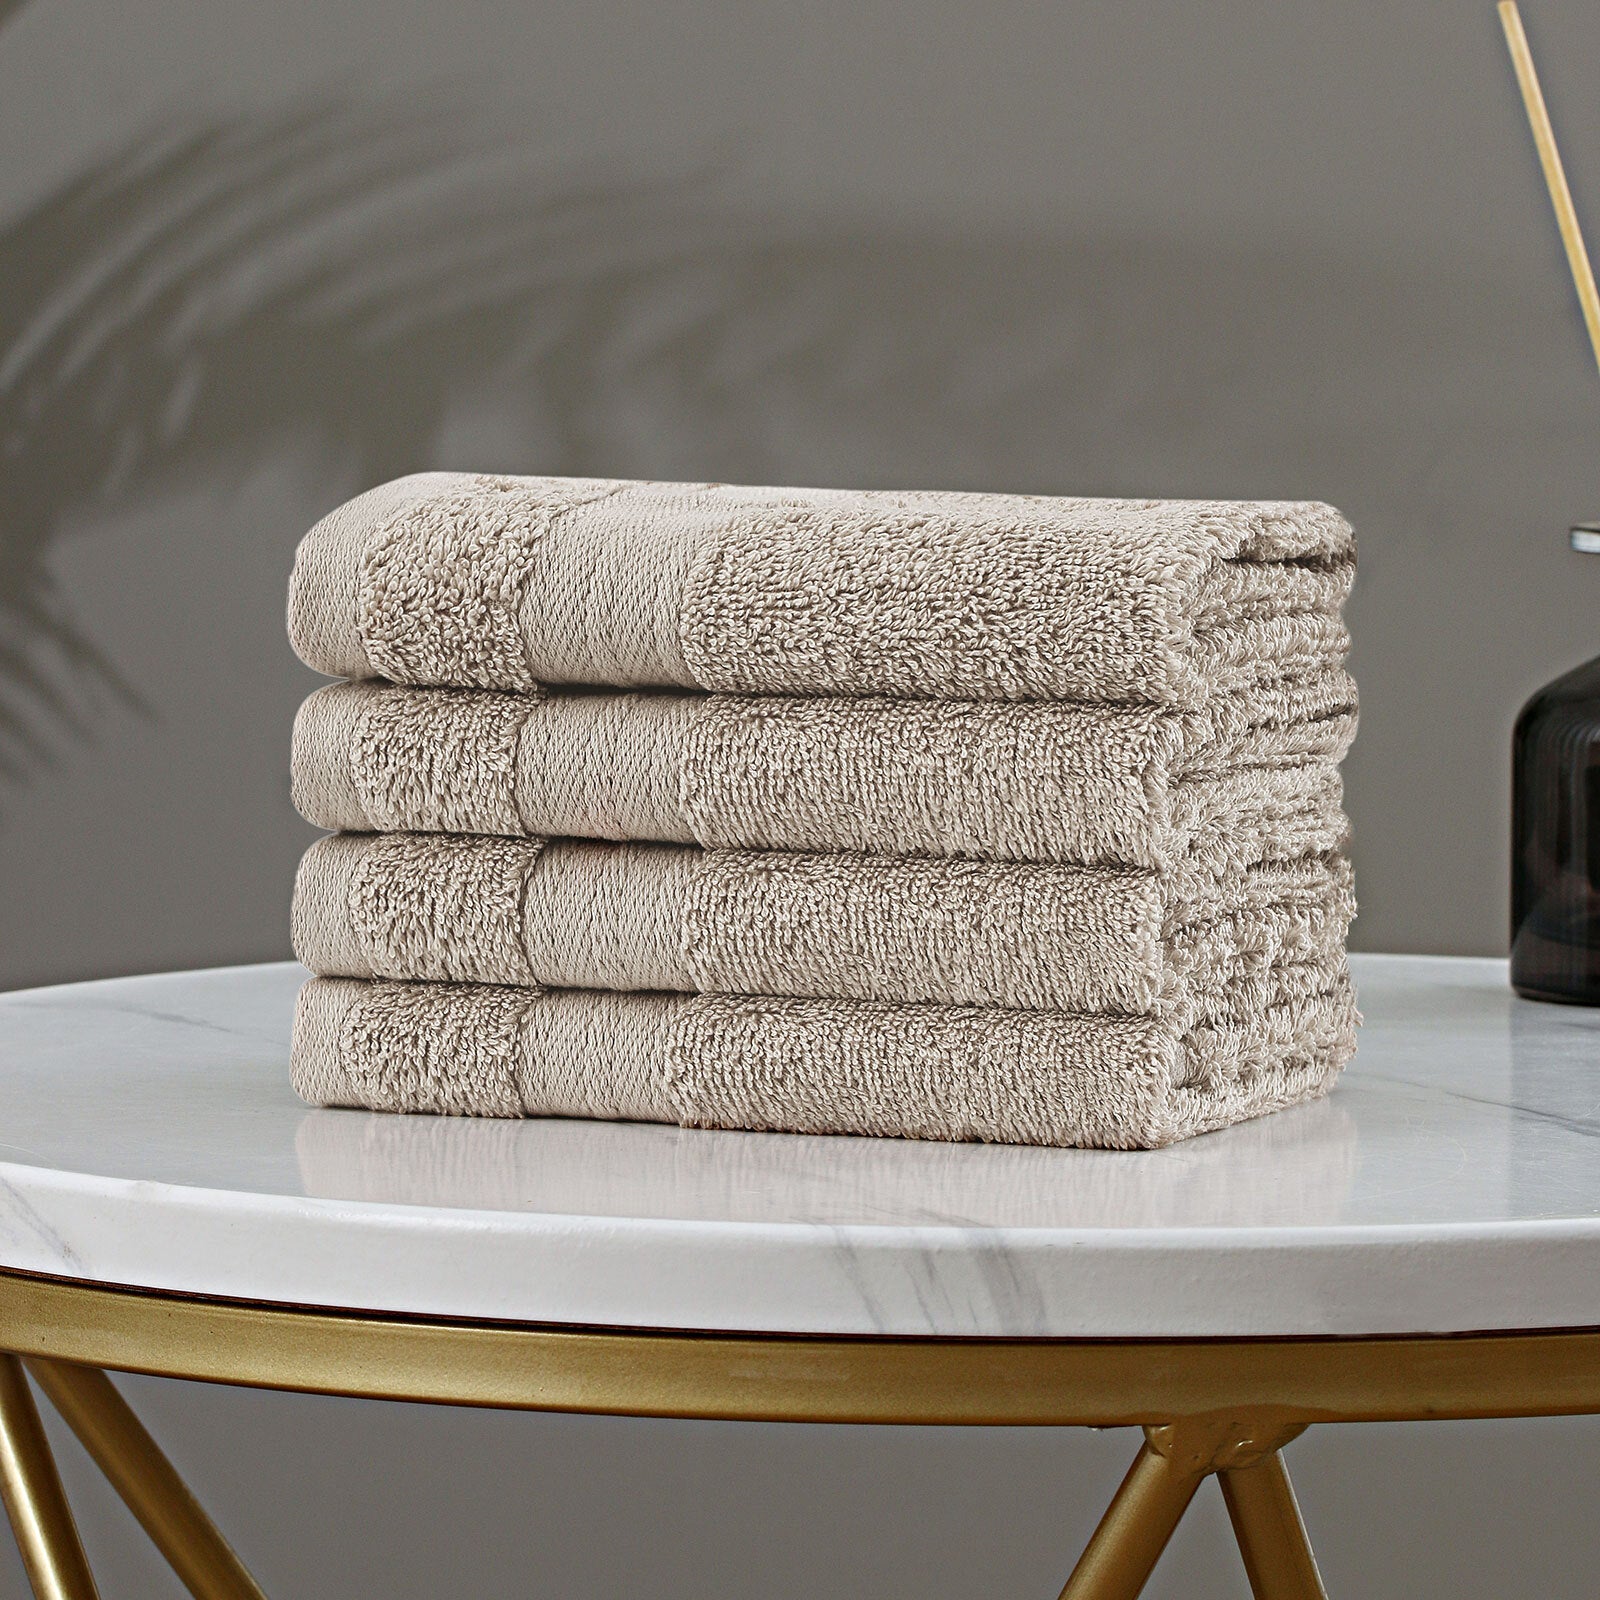 Linenland Bath Towel Set - 4 Piece Cotton Washcloths - Sandstone - Newstart Furniture